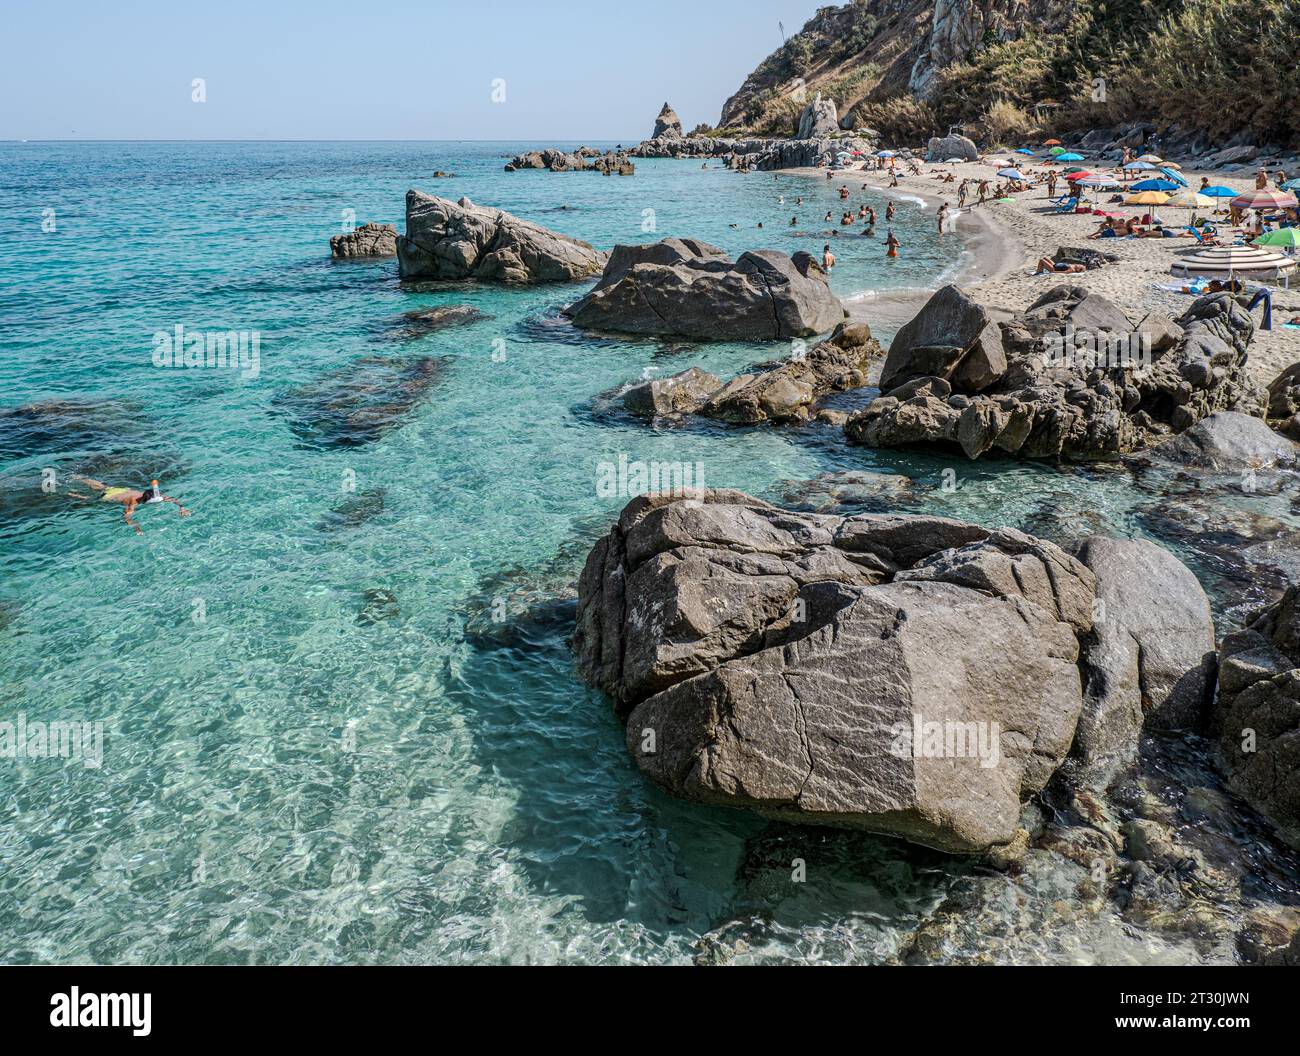 09-22-2023. Italie ; la célèbre plage Michelino, près de Tropea, en septembre avec foule de touristes, baigneurs et parasol. Parghelia, Vibo Valentia, Calabr Banque D'Images